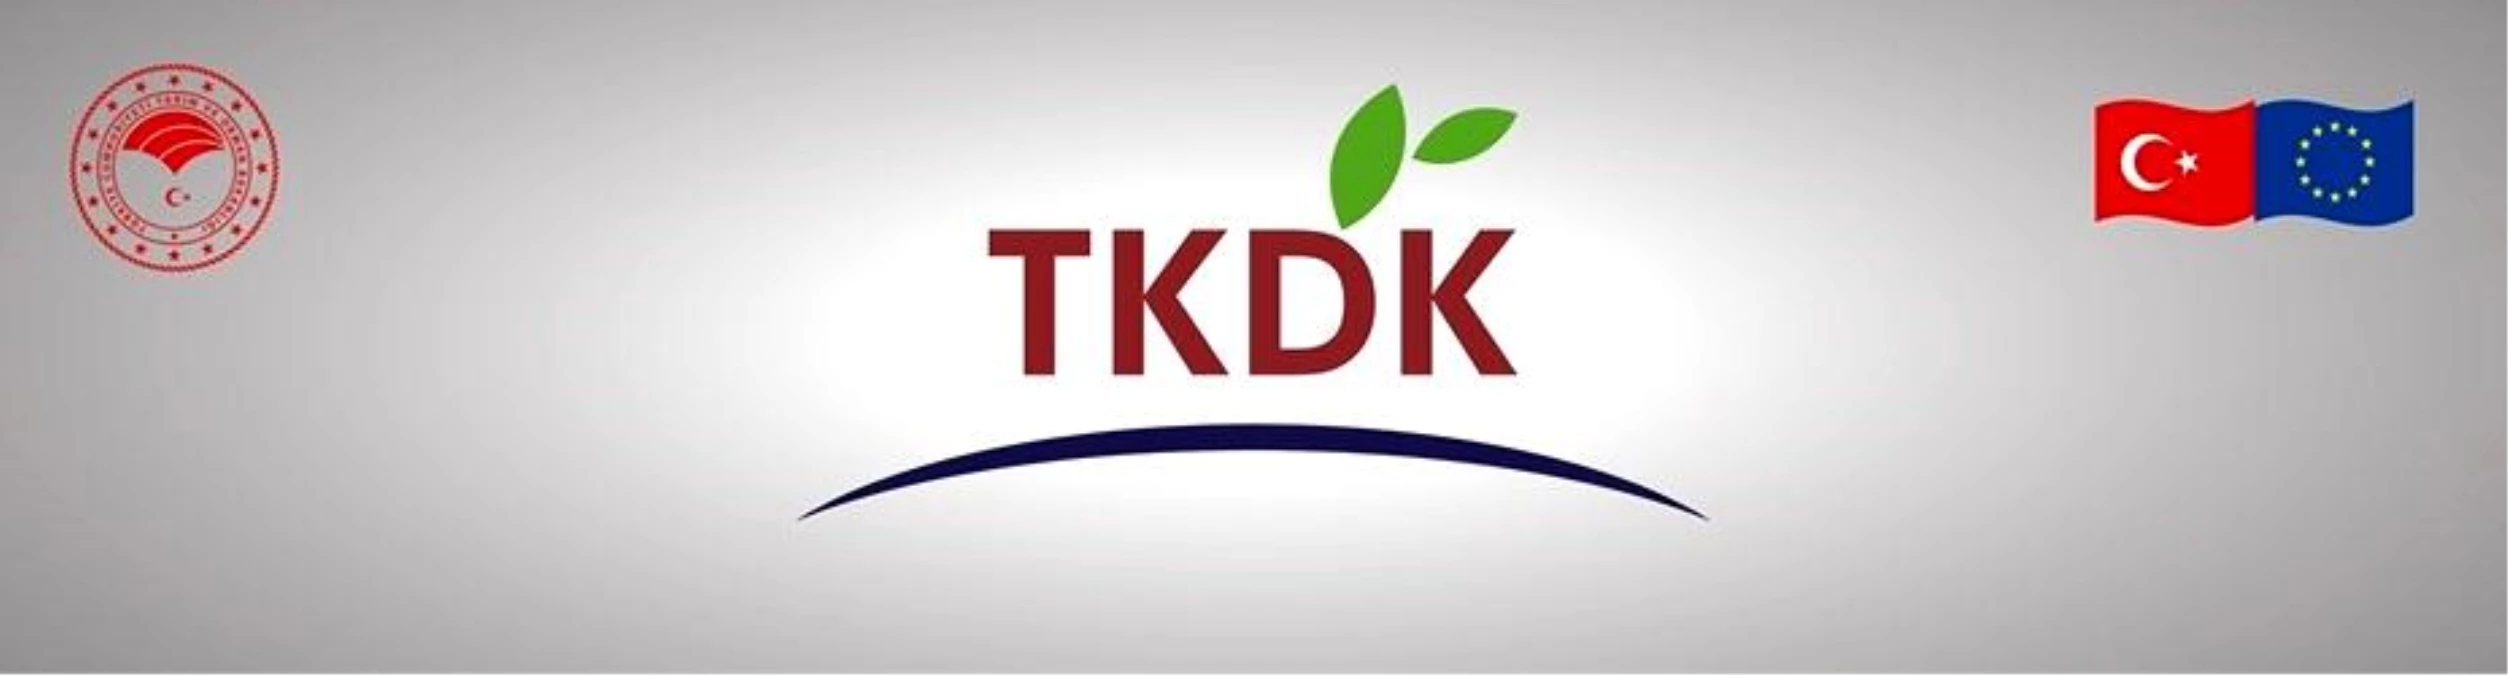 TKDK 20 Milyon Euro Desteği Yatırımcıyla Buluşturacak